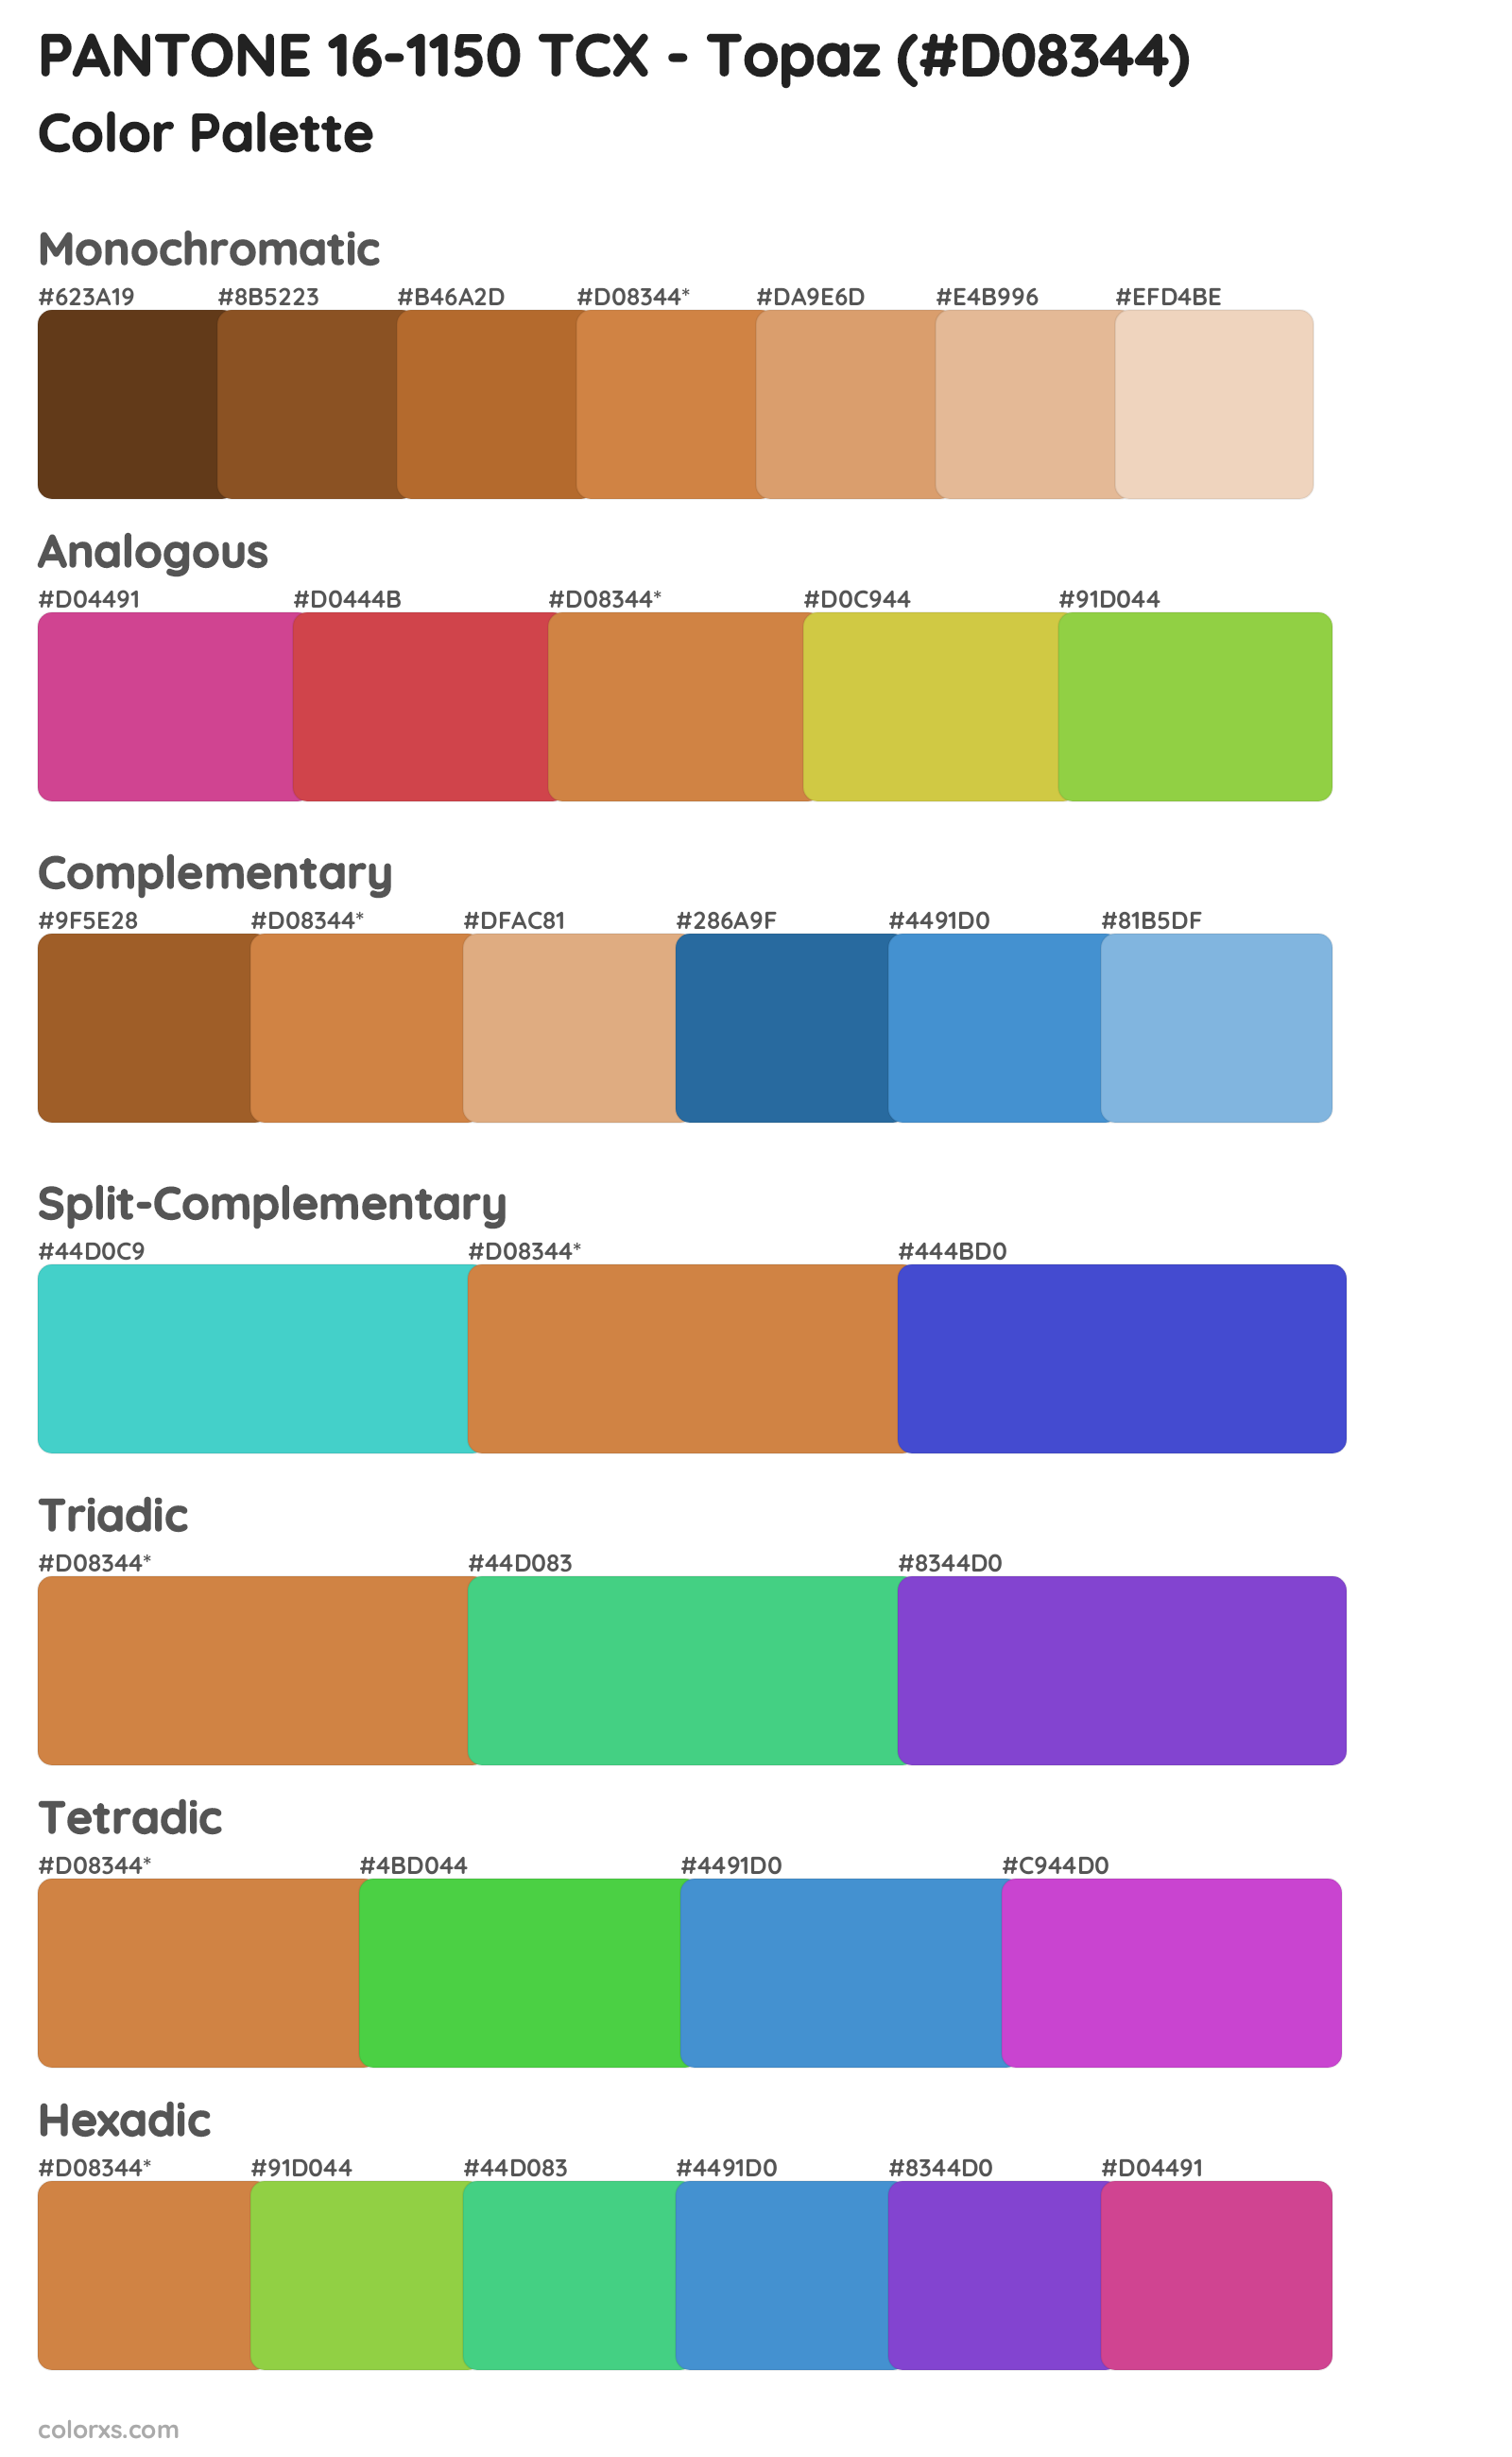 PANTONE 16-1150 TCX - Topaz Color Scheme Palettes